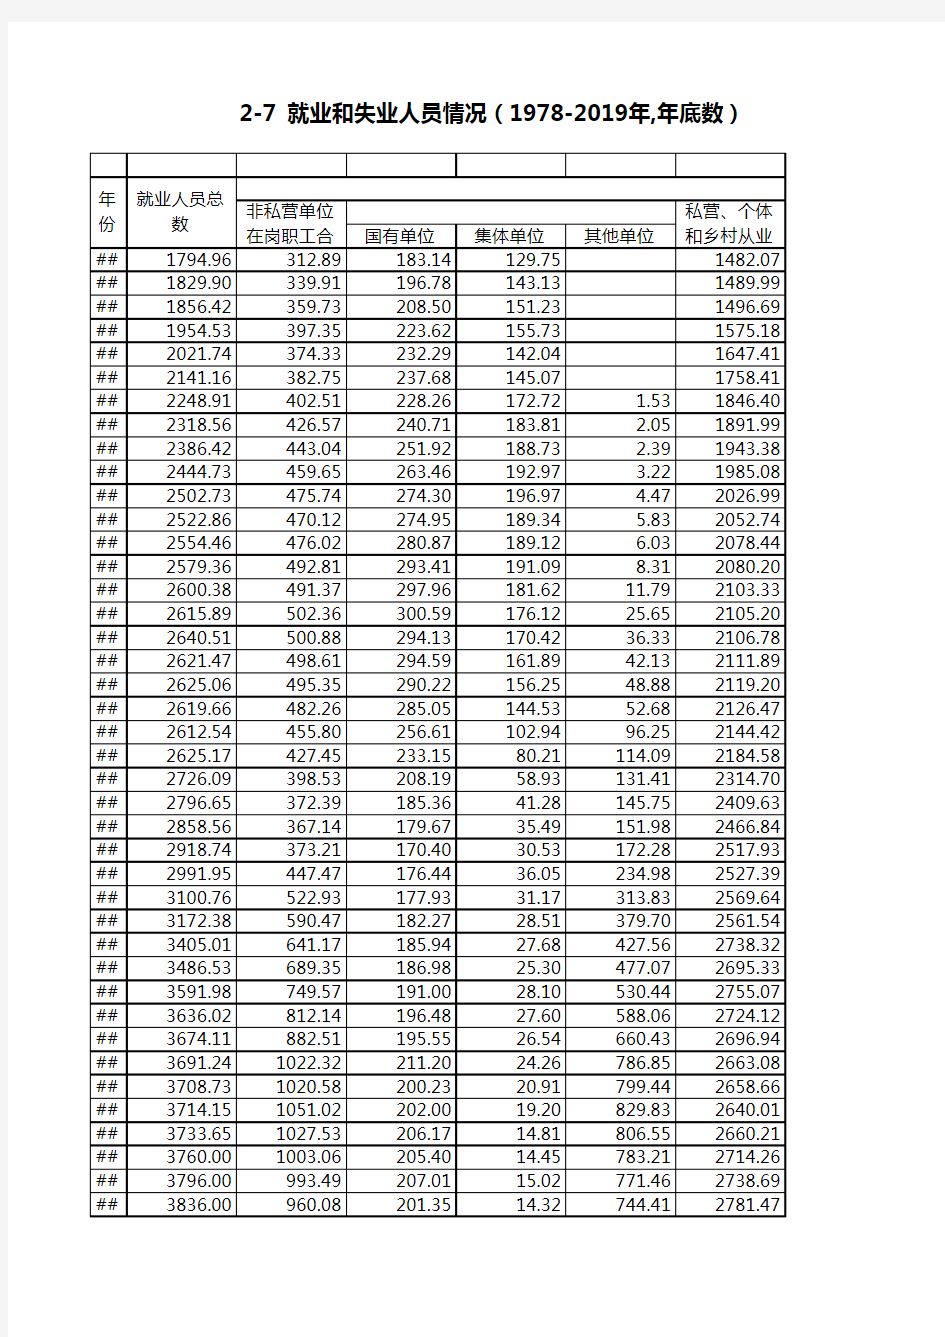 浙江统计年鉴2020社会经济发展指标：就业和失业人员情况1978-2019年,年底数